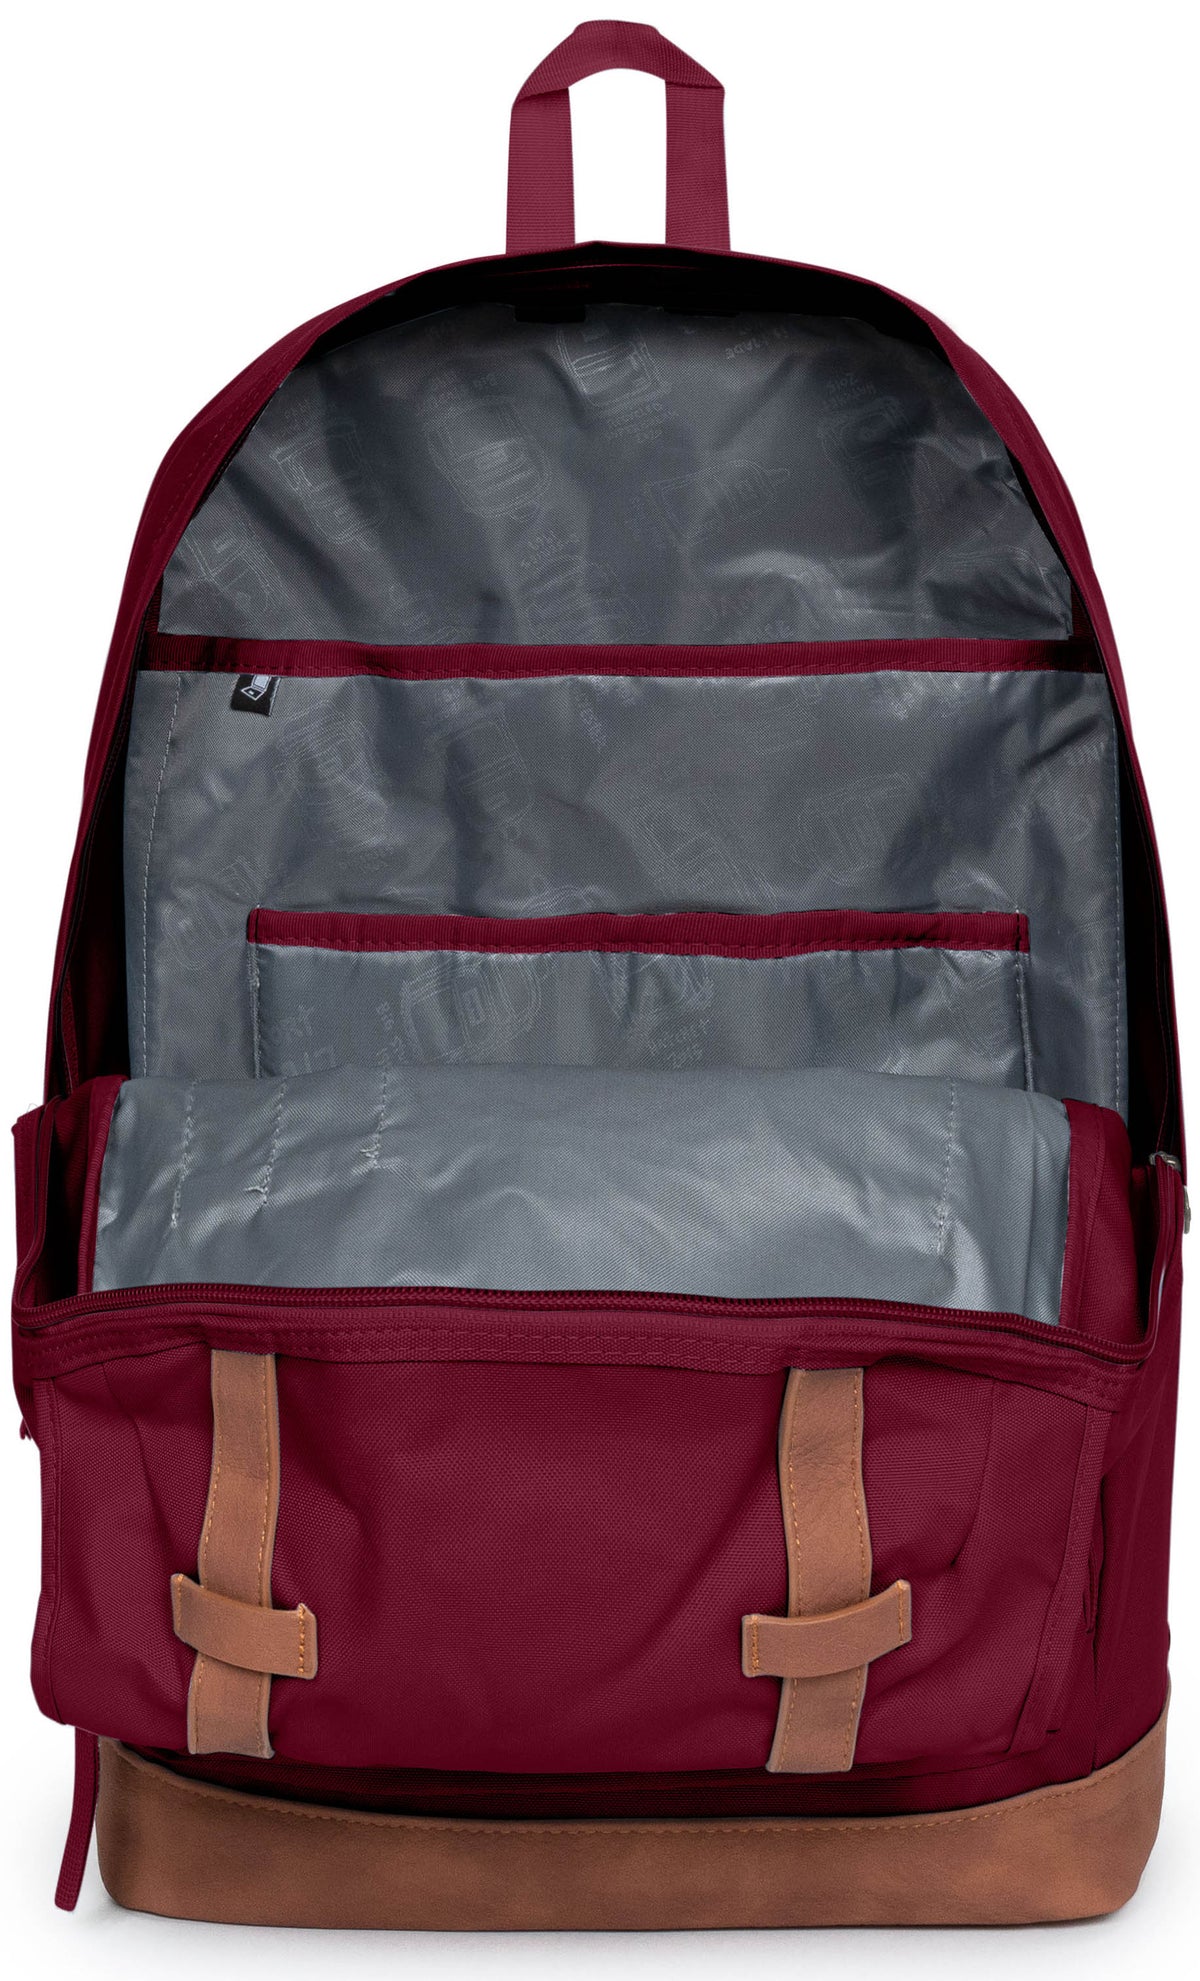 Jansport Cortlandt Backpack - Russet Red